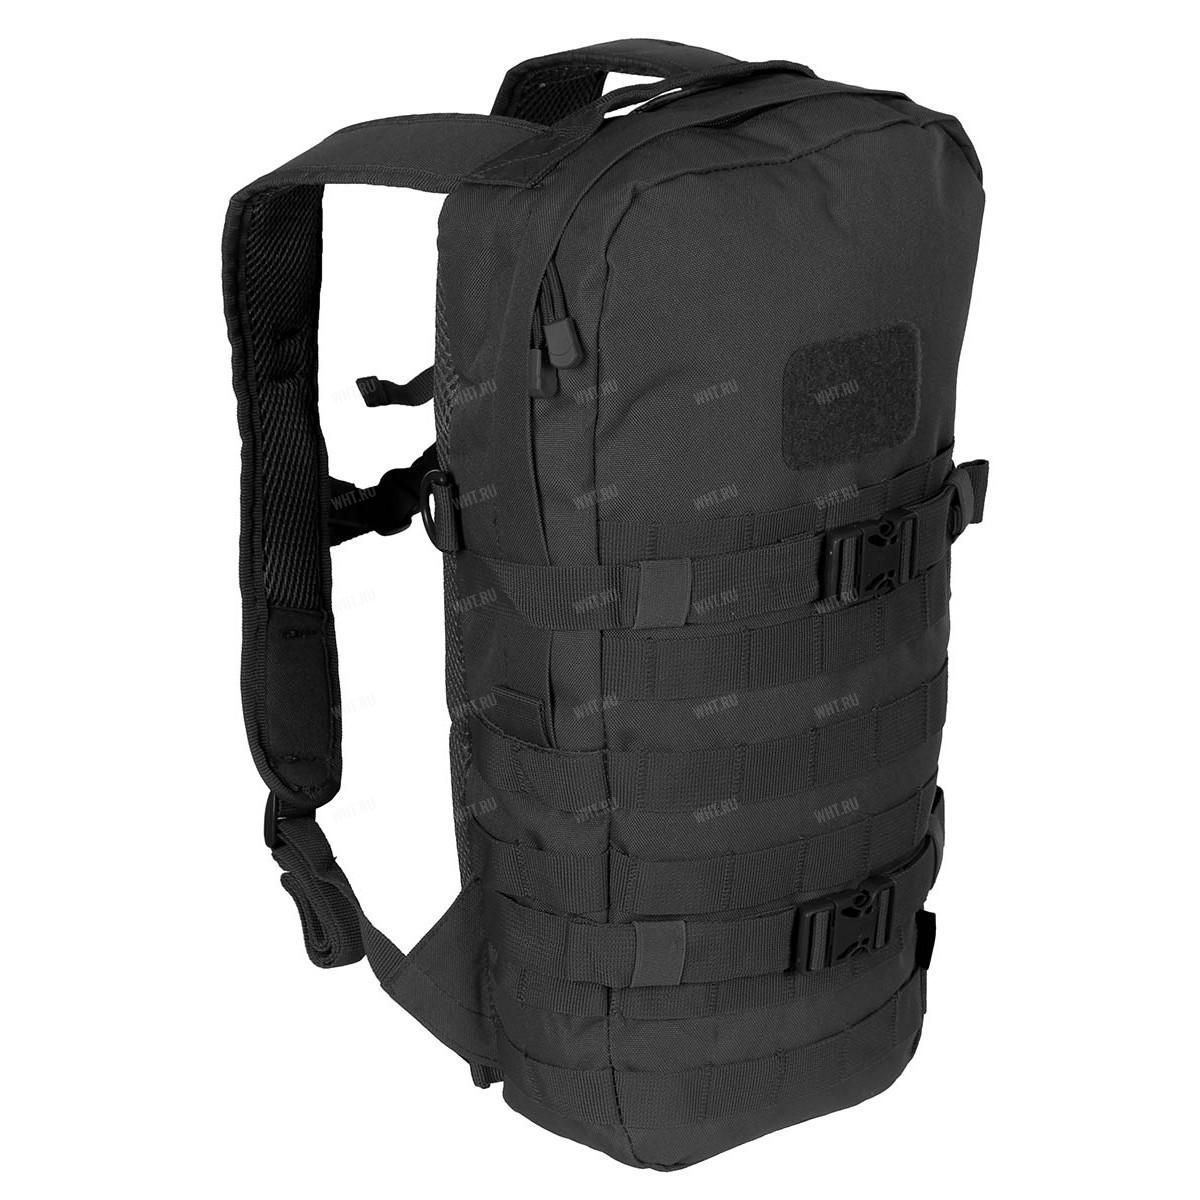 Тактический компактный рюкзак Daypack (15 литров), цвет чёрный купить в интернет-магазине wht.ru